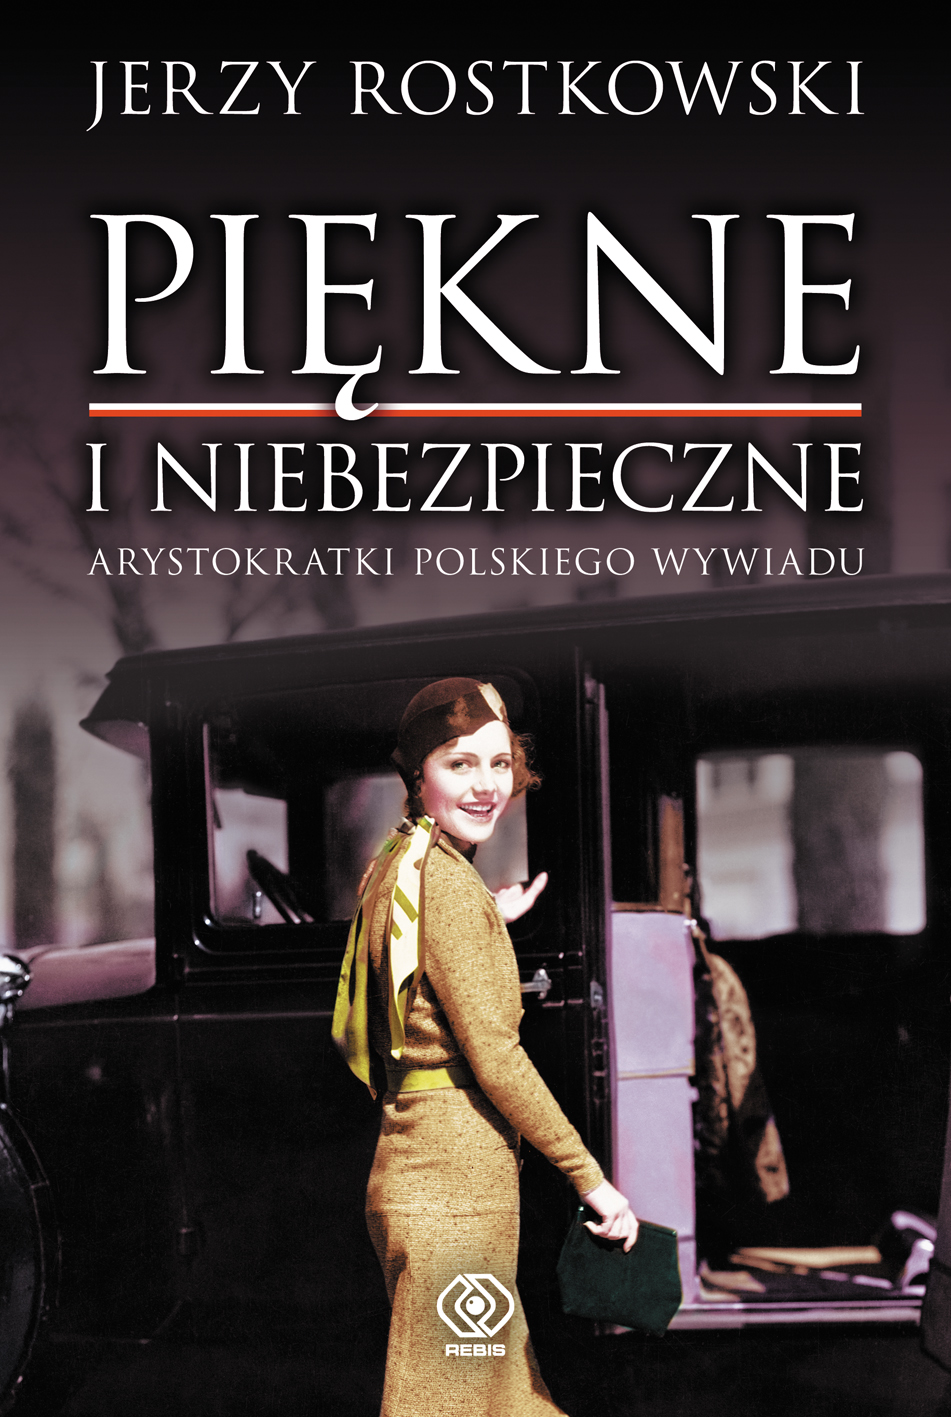 Bestseller REBIS-u:  Jerzy Rostkowski, " Piękne i niebezpieczne. Arystokratki polskiego wywiadu"